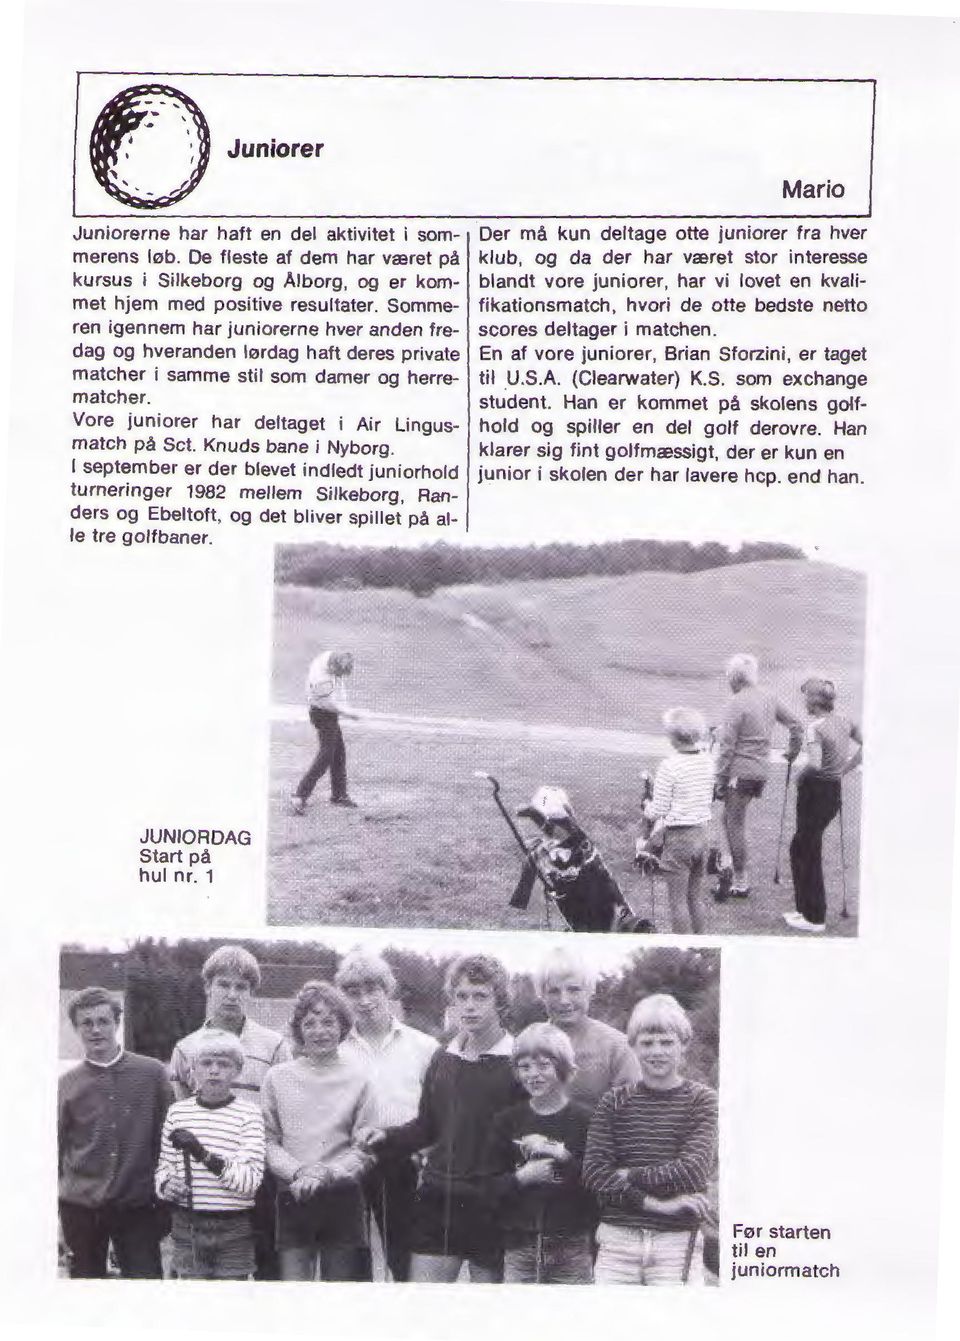 Knuds bane i Nyborg. l september er der blevet indledt juniorhold turneringer 1982 mellem Silkeborg, Randers og Ebeltoft, og det bliver spillet på alle tre golfbaner.